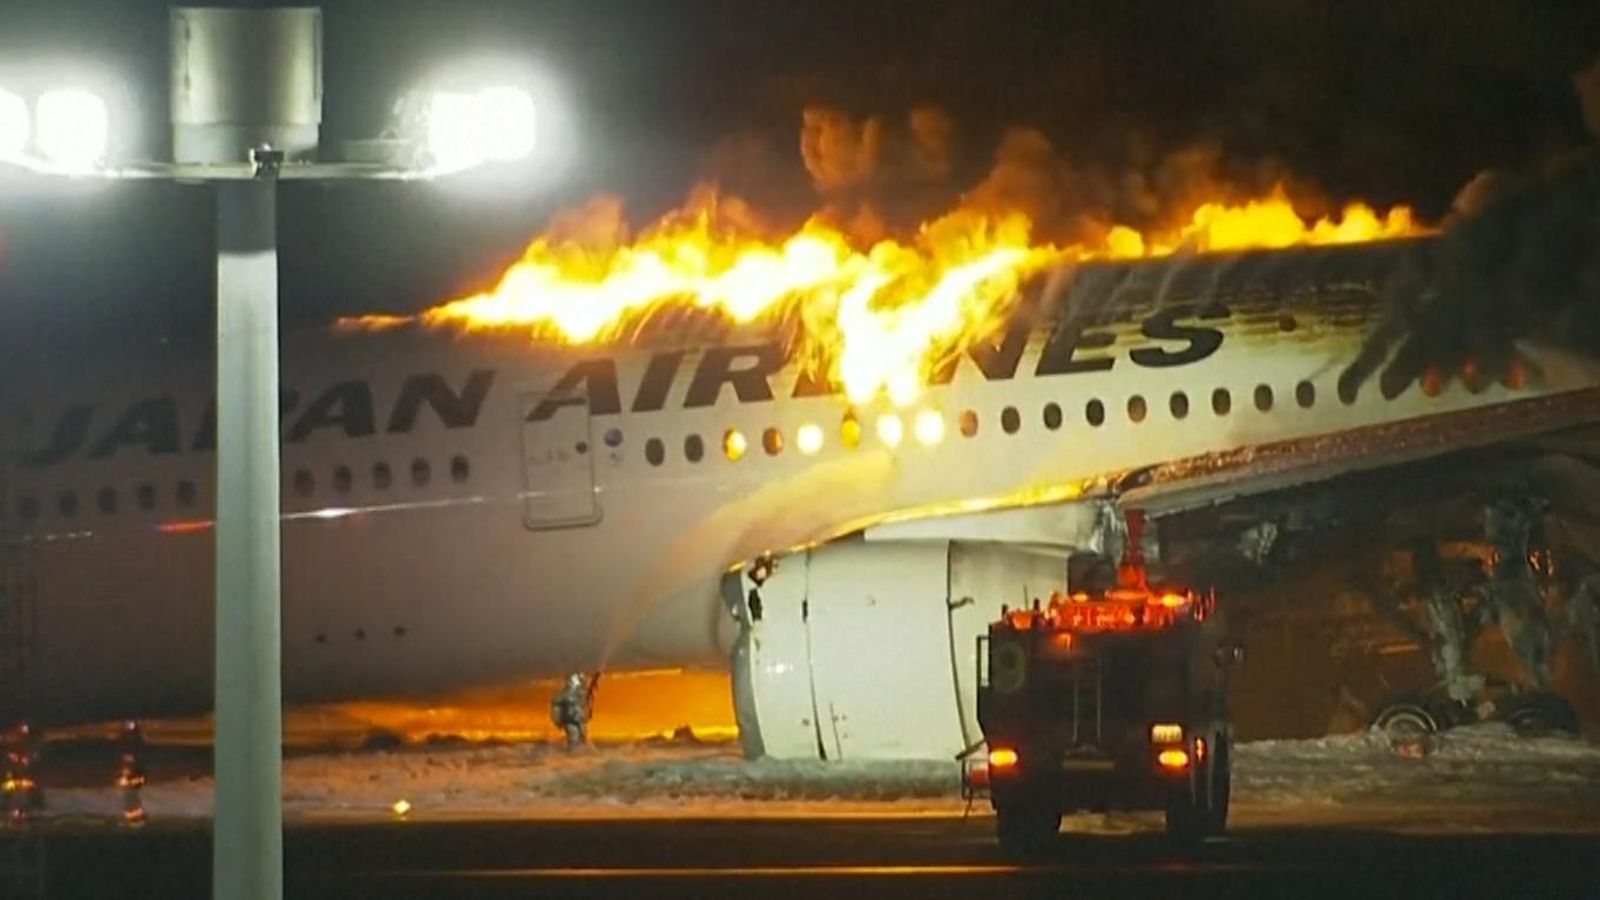 Máy bay Japan Airlines chở hơn 300 hành khách bốc cháy dữ dội tại sân bay Nhật Bản- Ảnh 3.